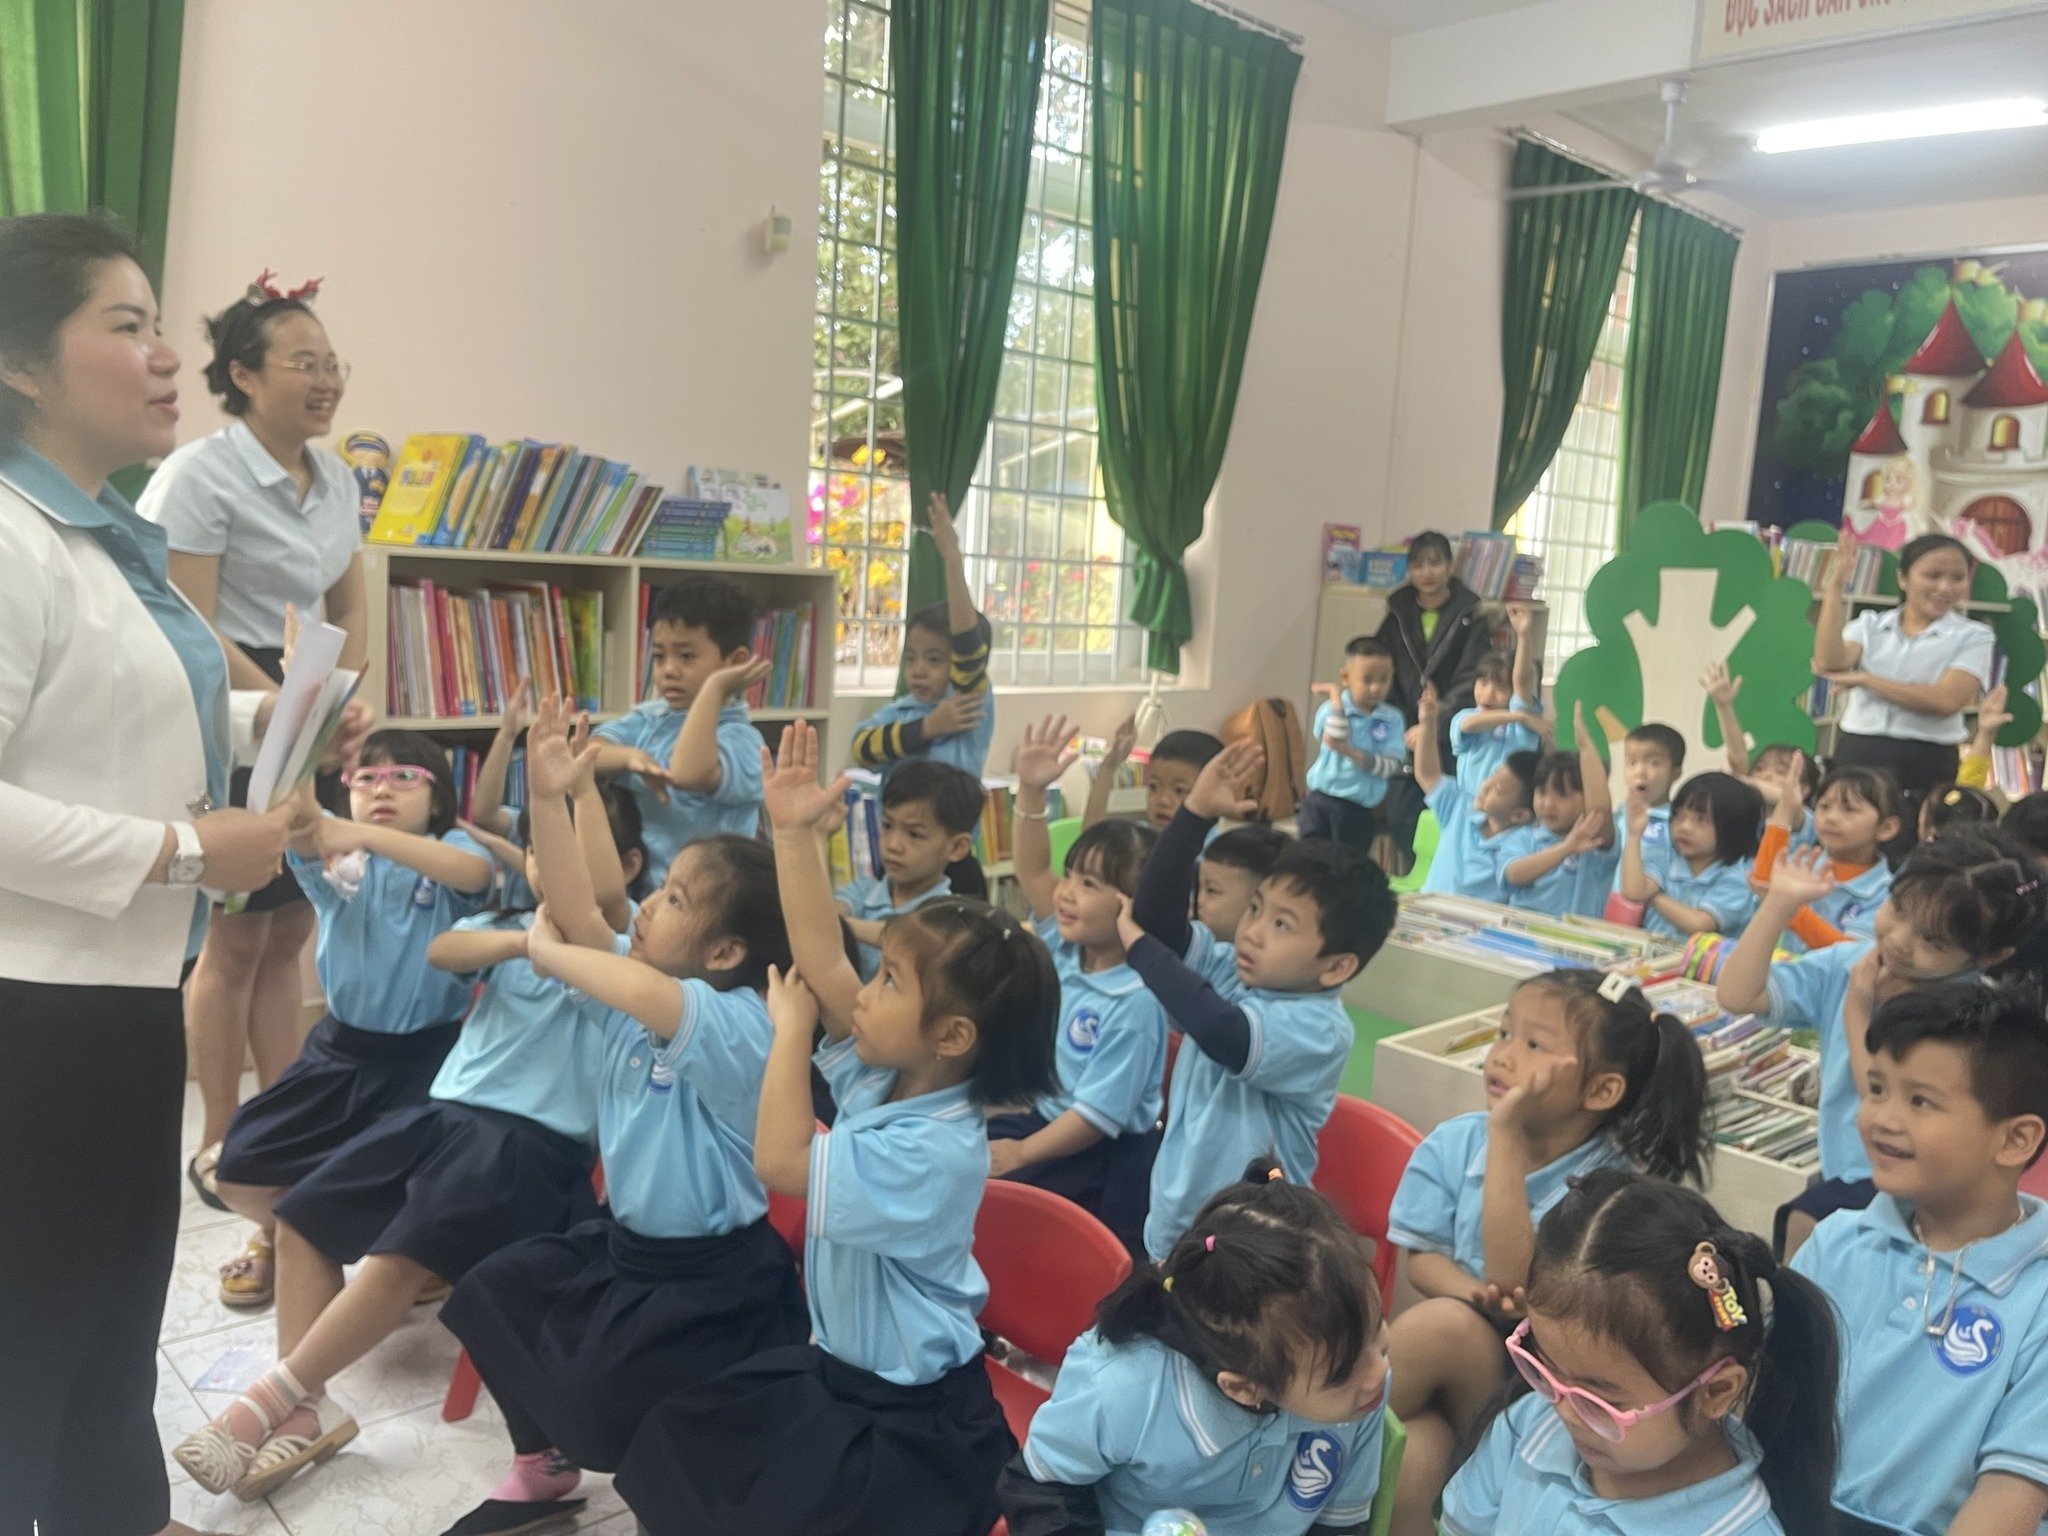 Một buổi hoạt động ngoại khóa của các cháu trường Mầm non Thiên Nga tại Thư viện tỉnh Đắk Lắk